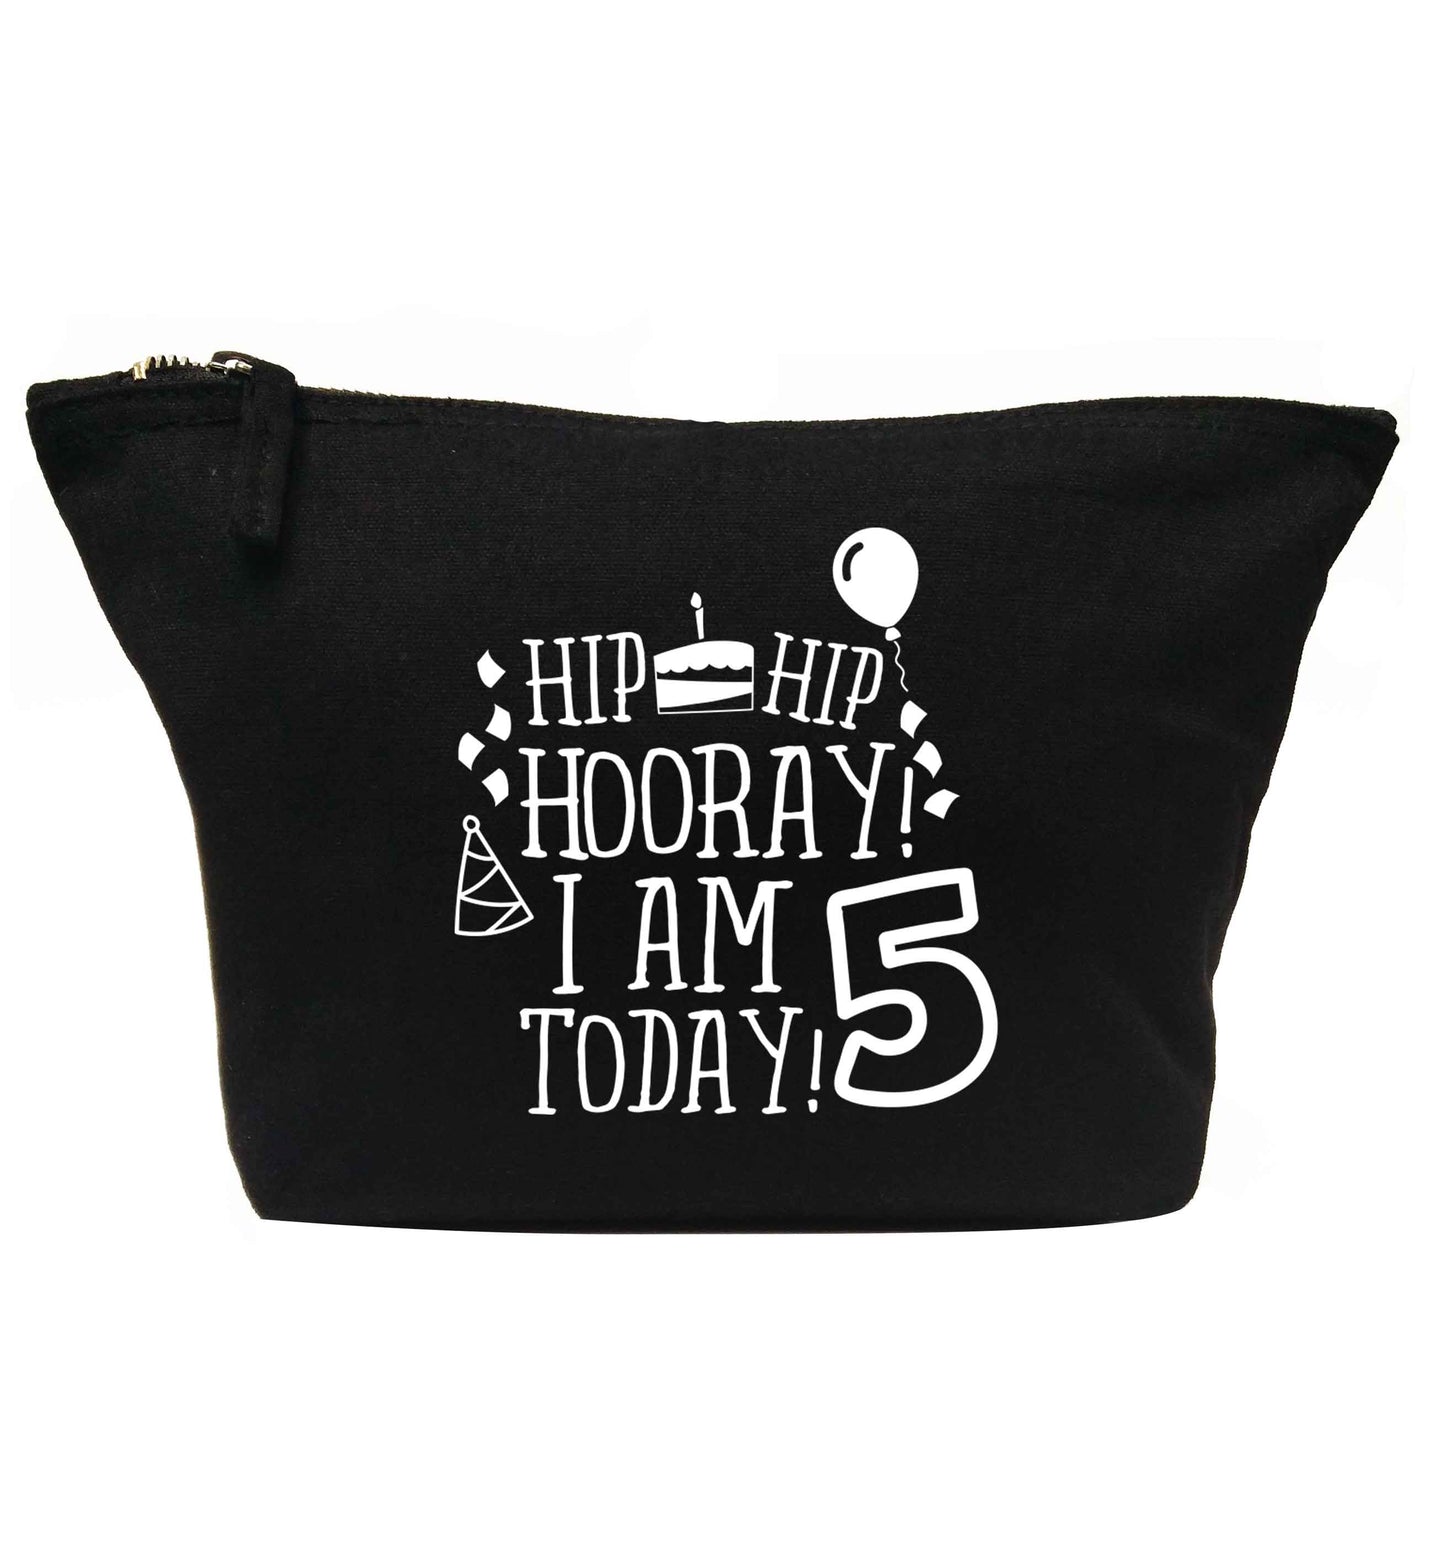 Hip hip hooray I am five today! | Makeup / wash bag